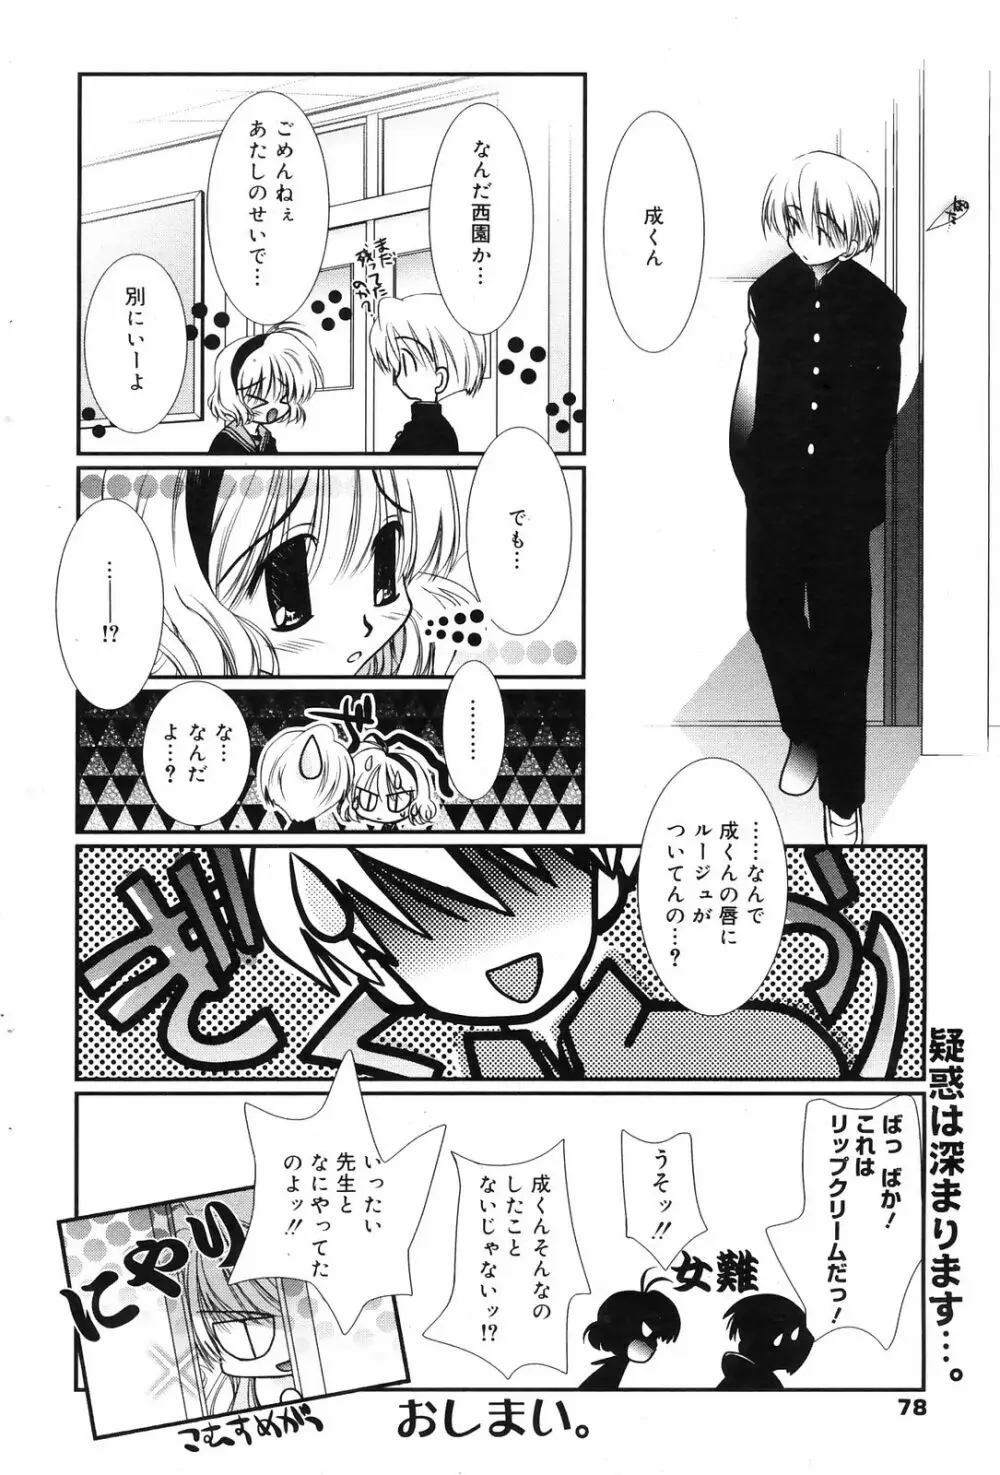 Manga Bangaichi 2009-01 78ページ